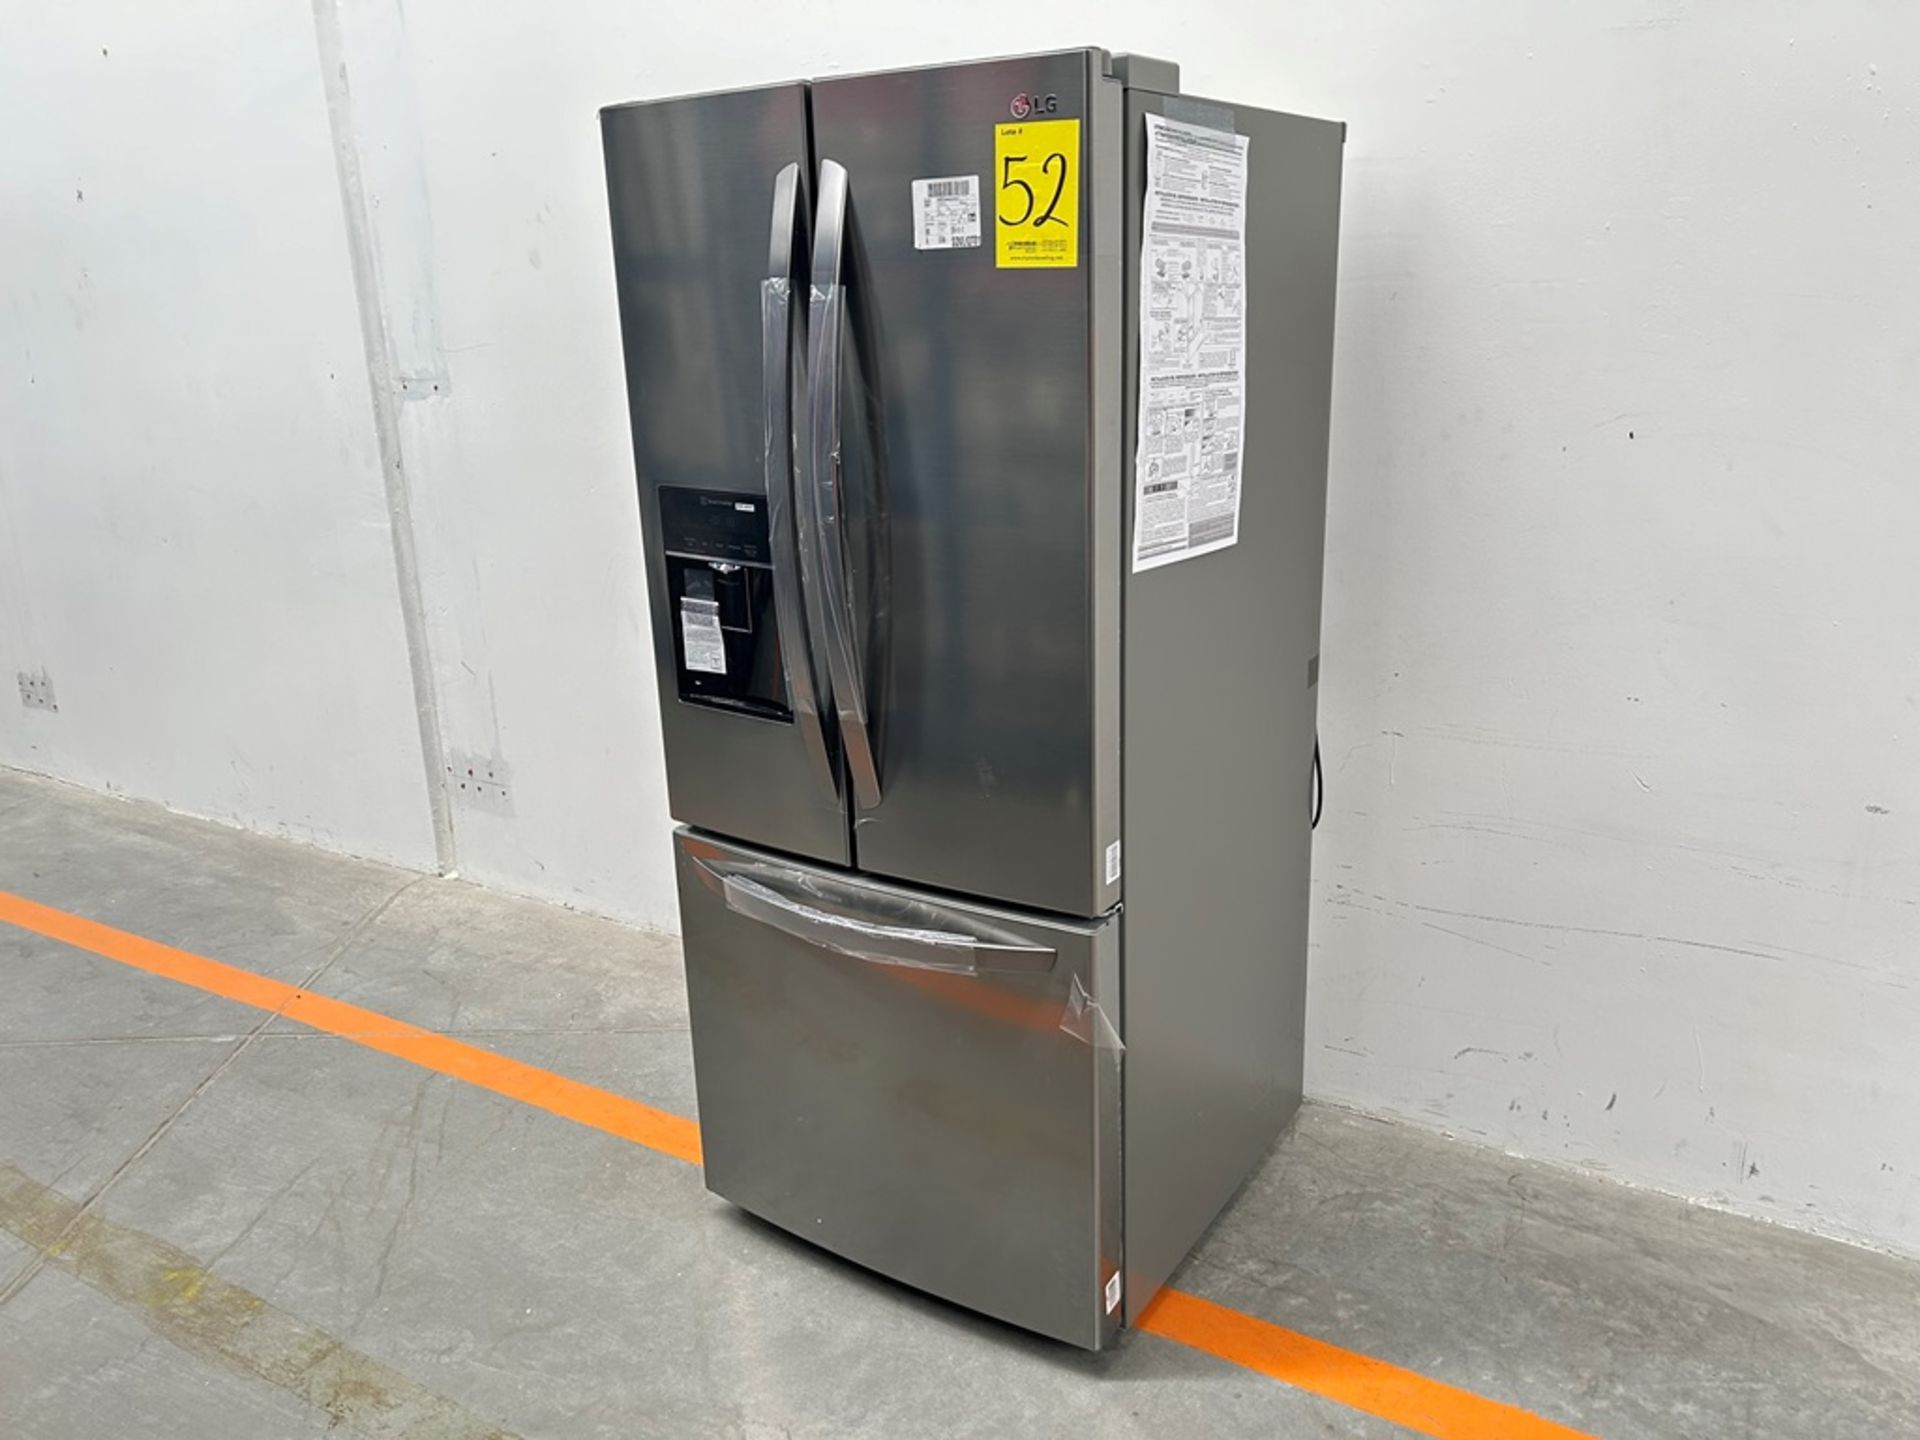 (NUEVO) Refrigerador con dispensador de agua Marca LG, Modelo GM22SGPK, Serie 28061, Color GRIS - Image 2 of 11